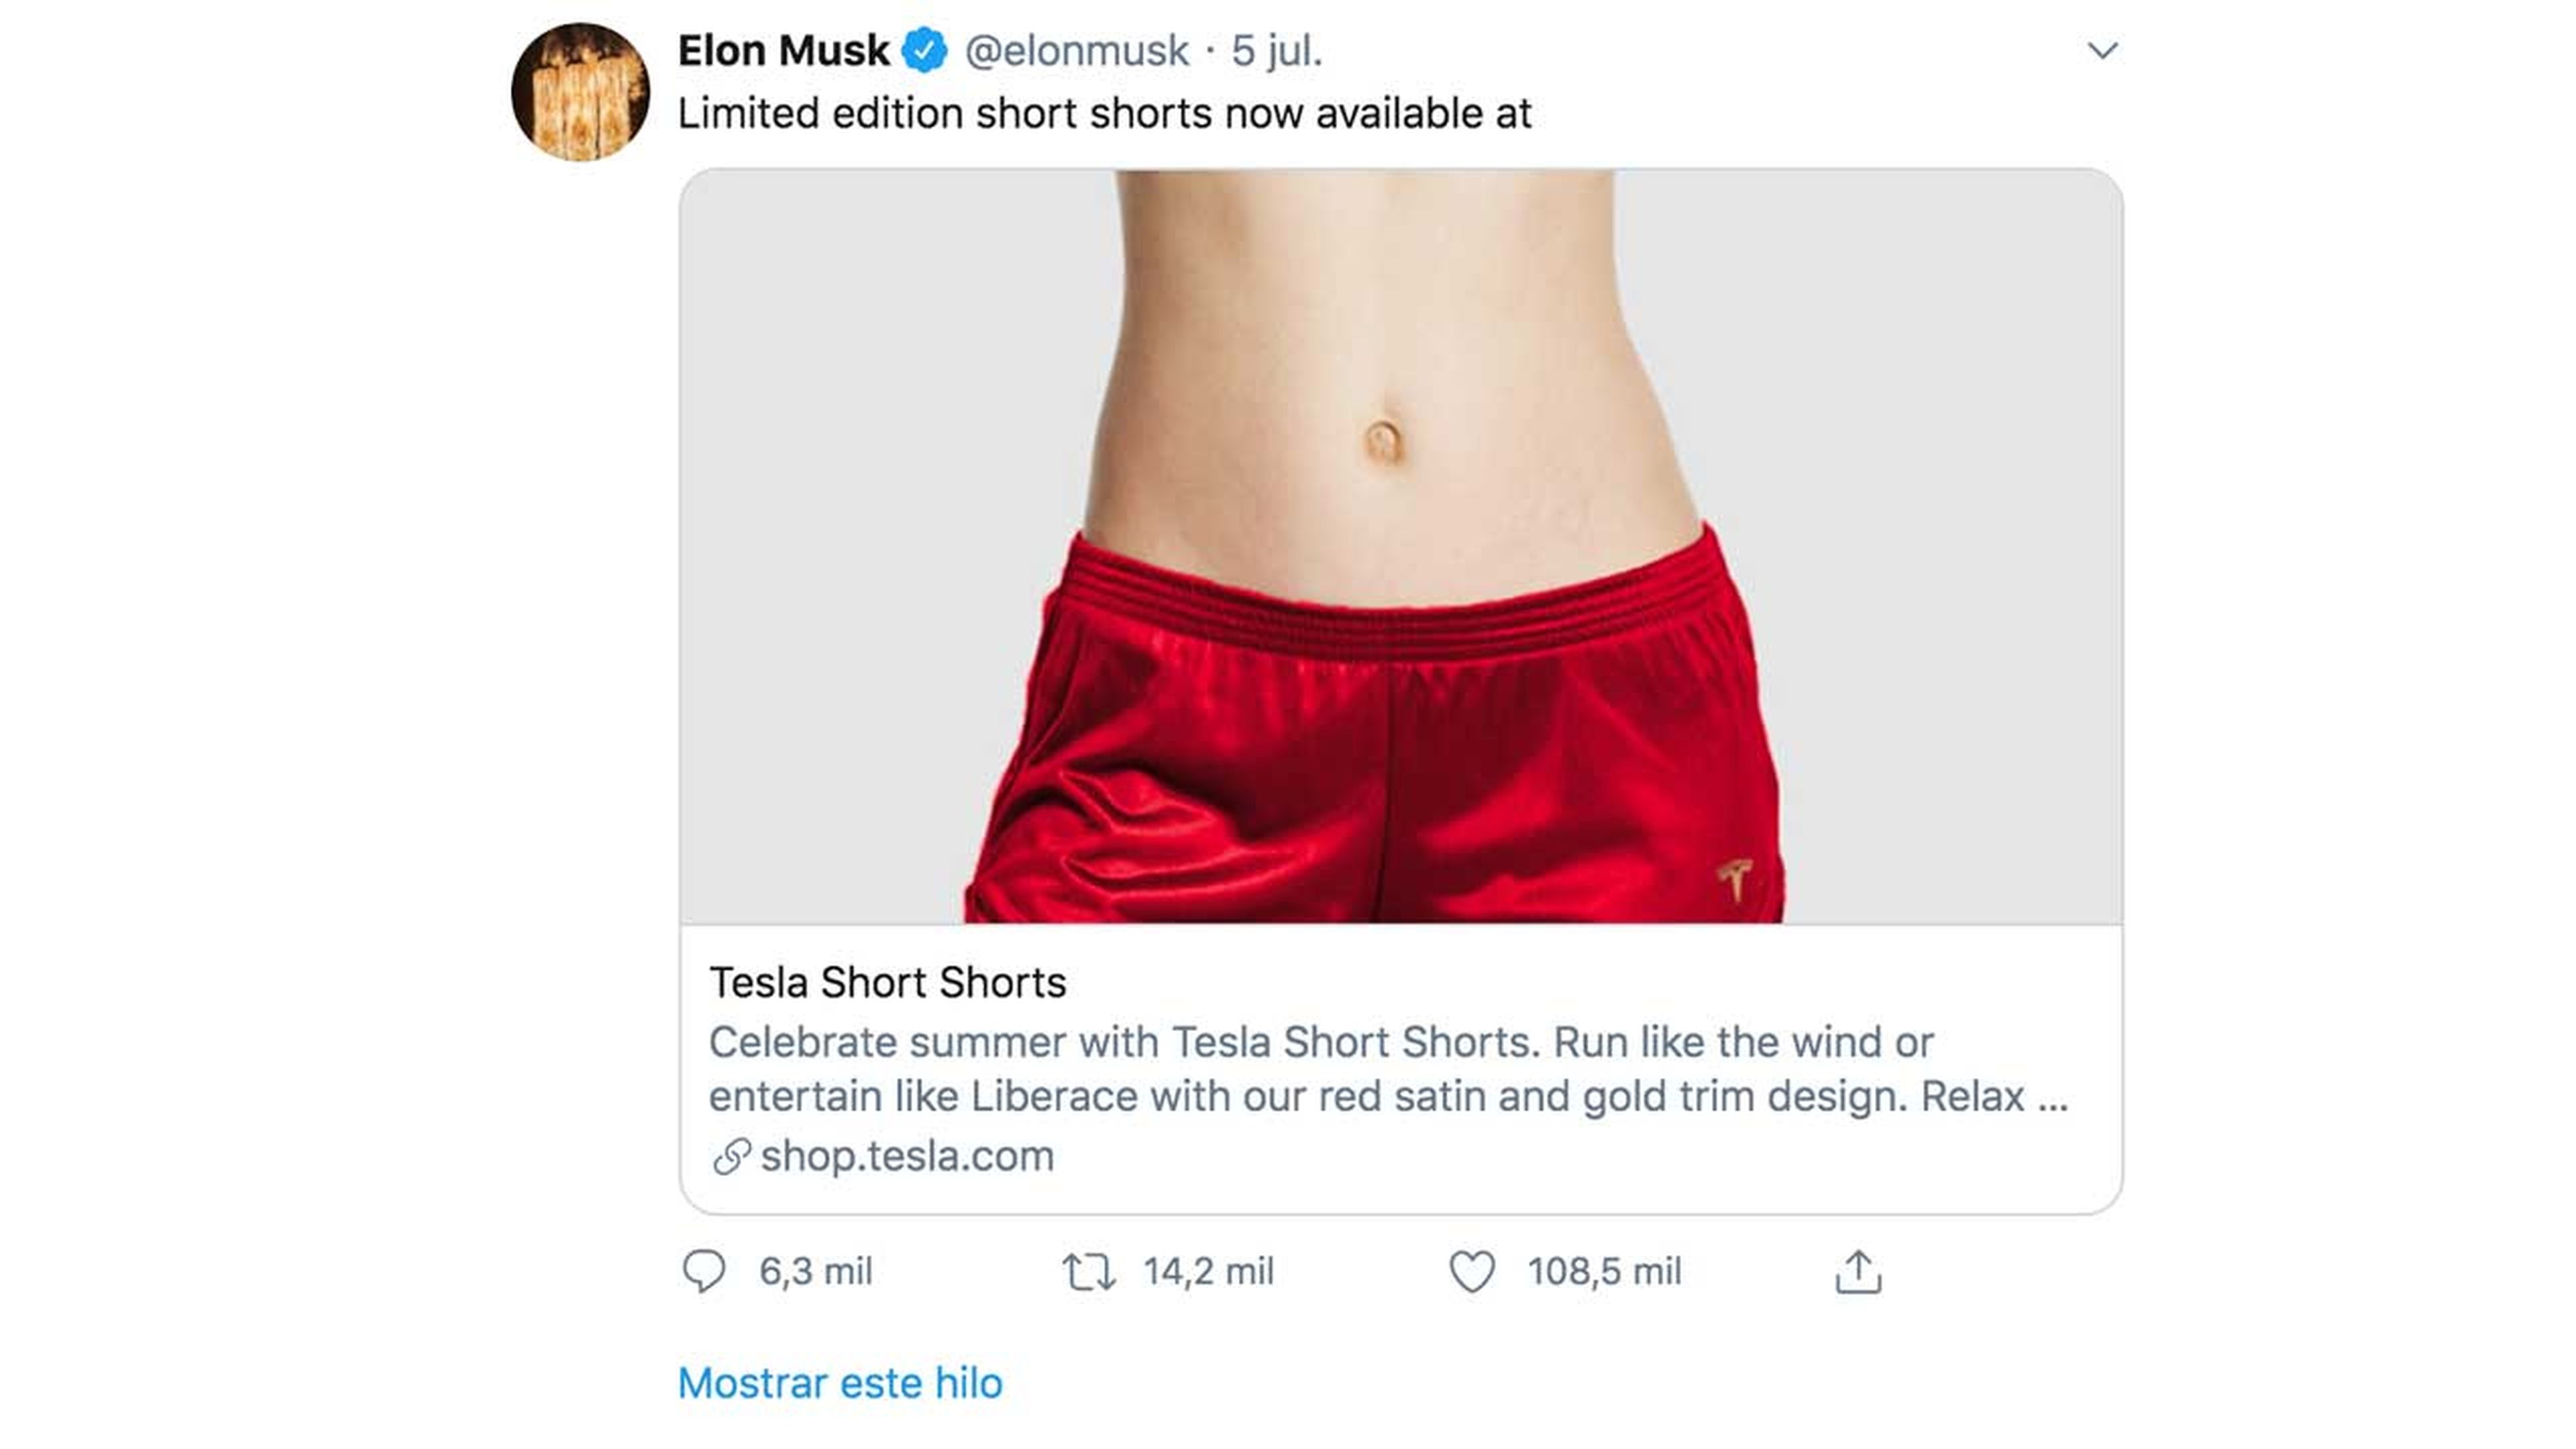 Aquí, el polémico Tweet de Elon Musk